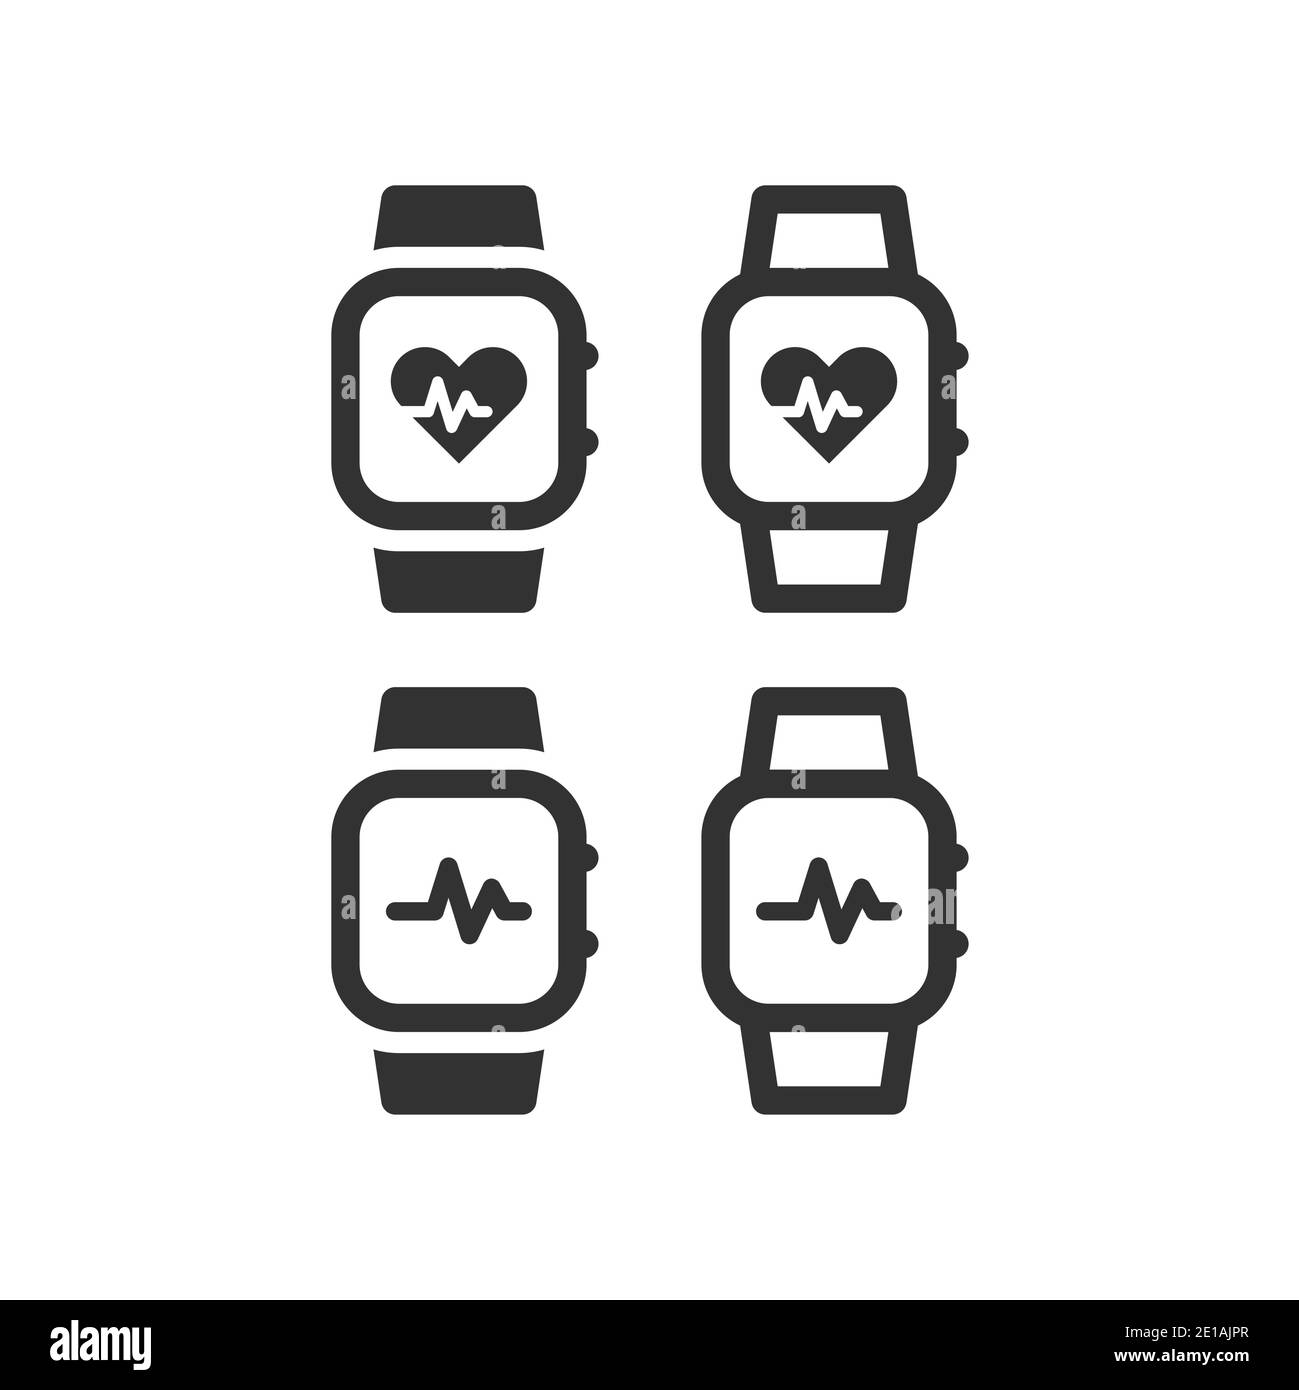 Pulsuhr oder Pulsometer mit Herzschlagsymbol. Armbanduhr mit Herzfrequenzmessanzeige, schwarzes Vektorsymbol. Stock Vektor